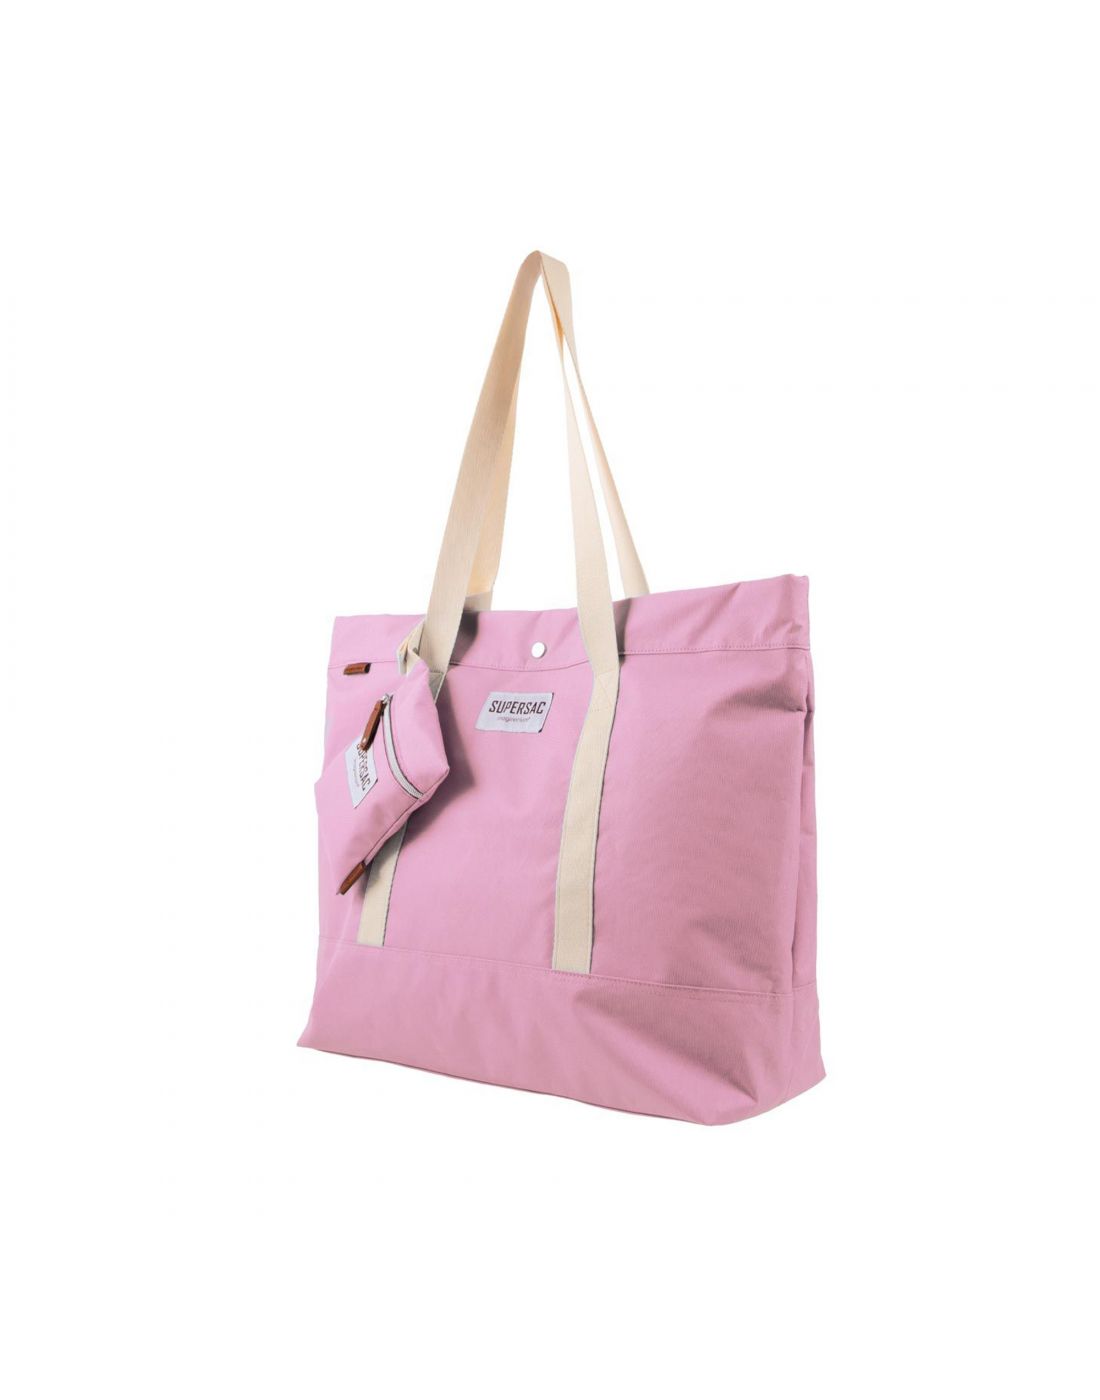 Imagianrium Tote Bag Supersac Pink